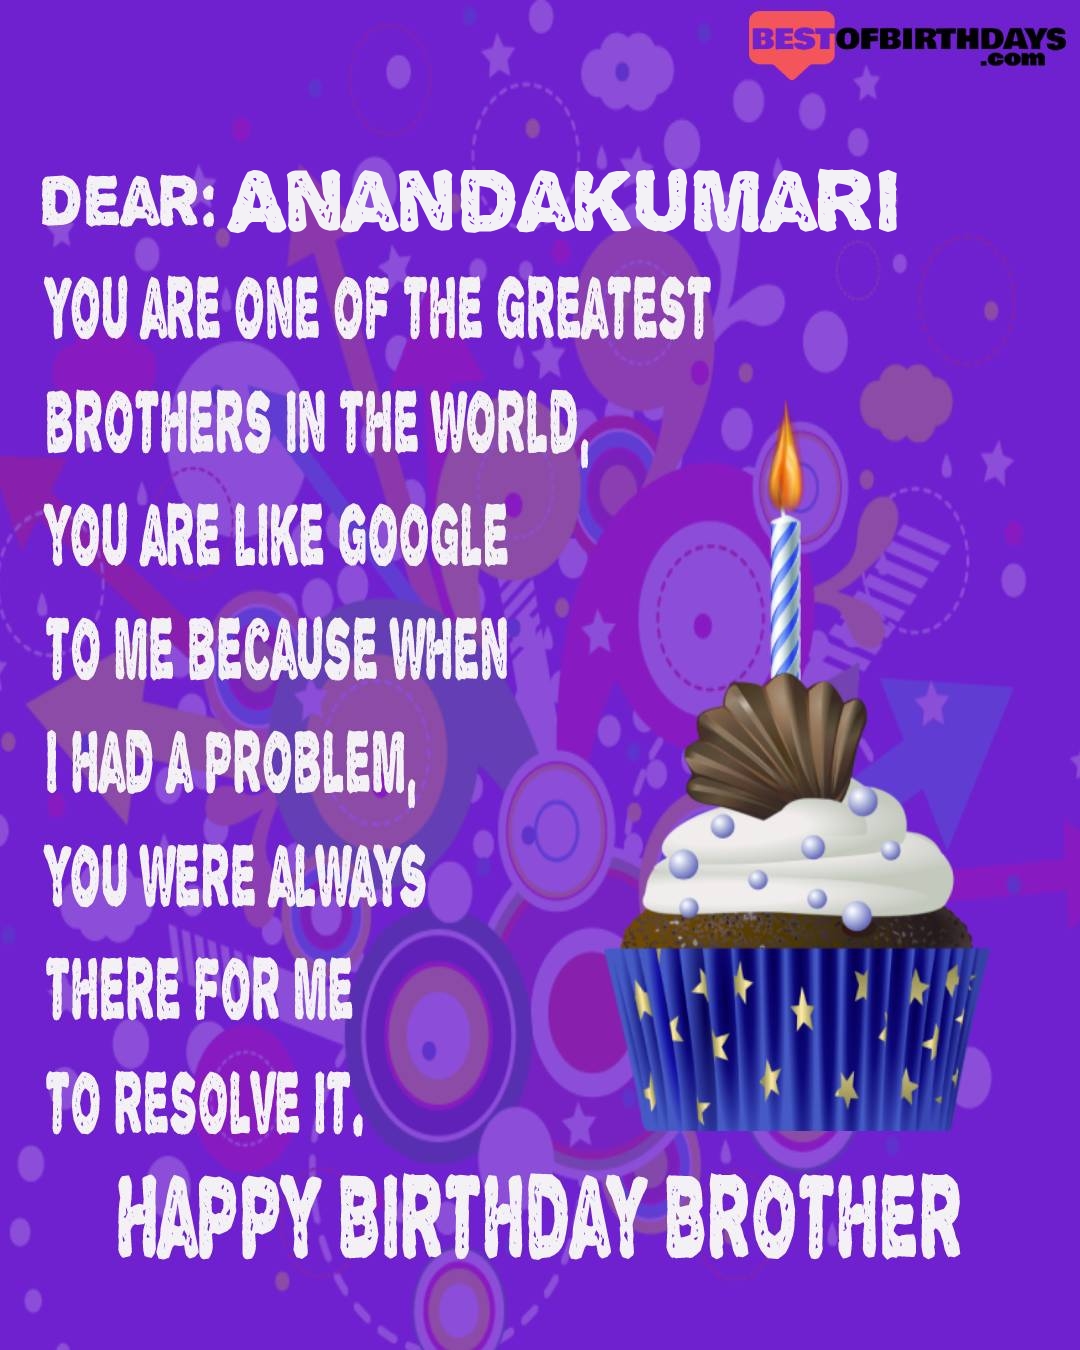 Happy birthday anandakumari bhai brother bro